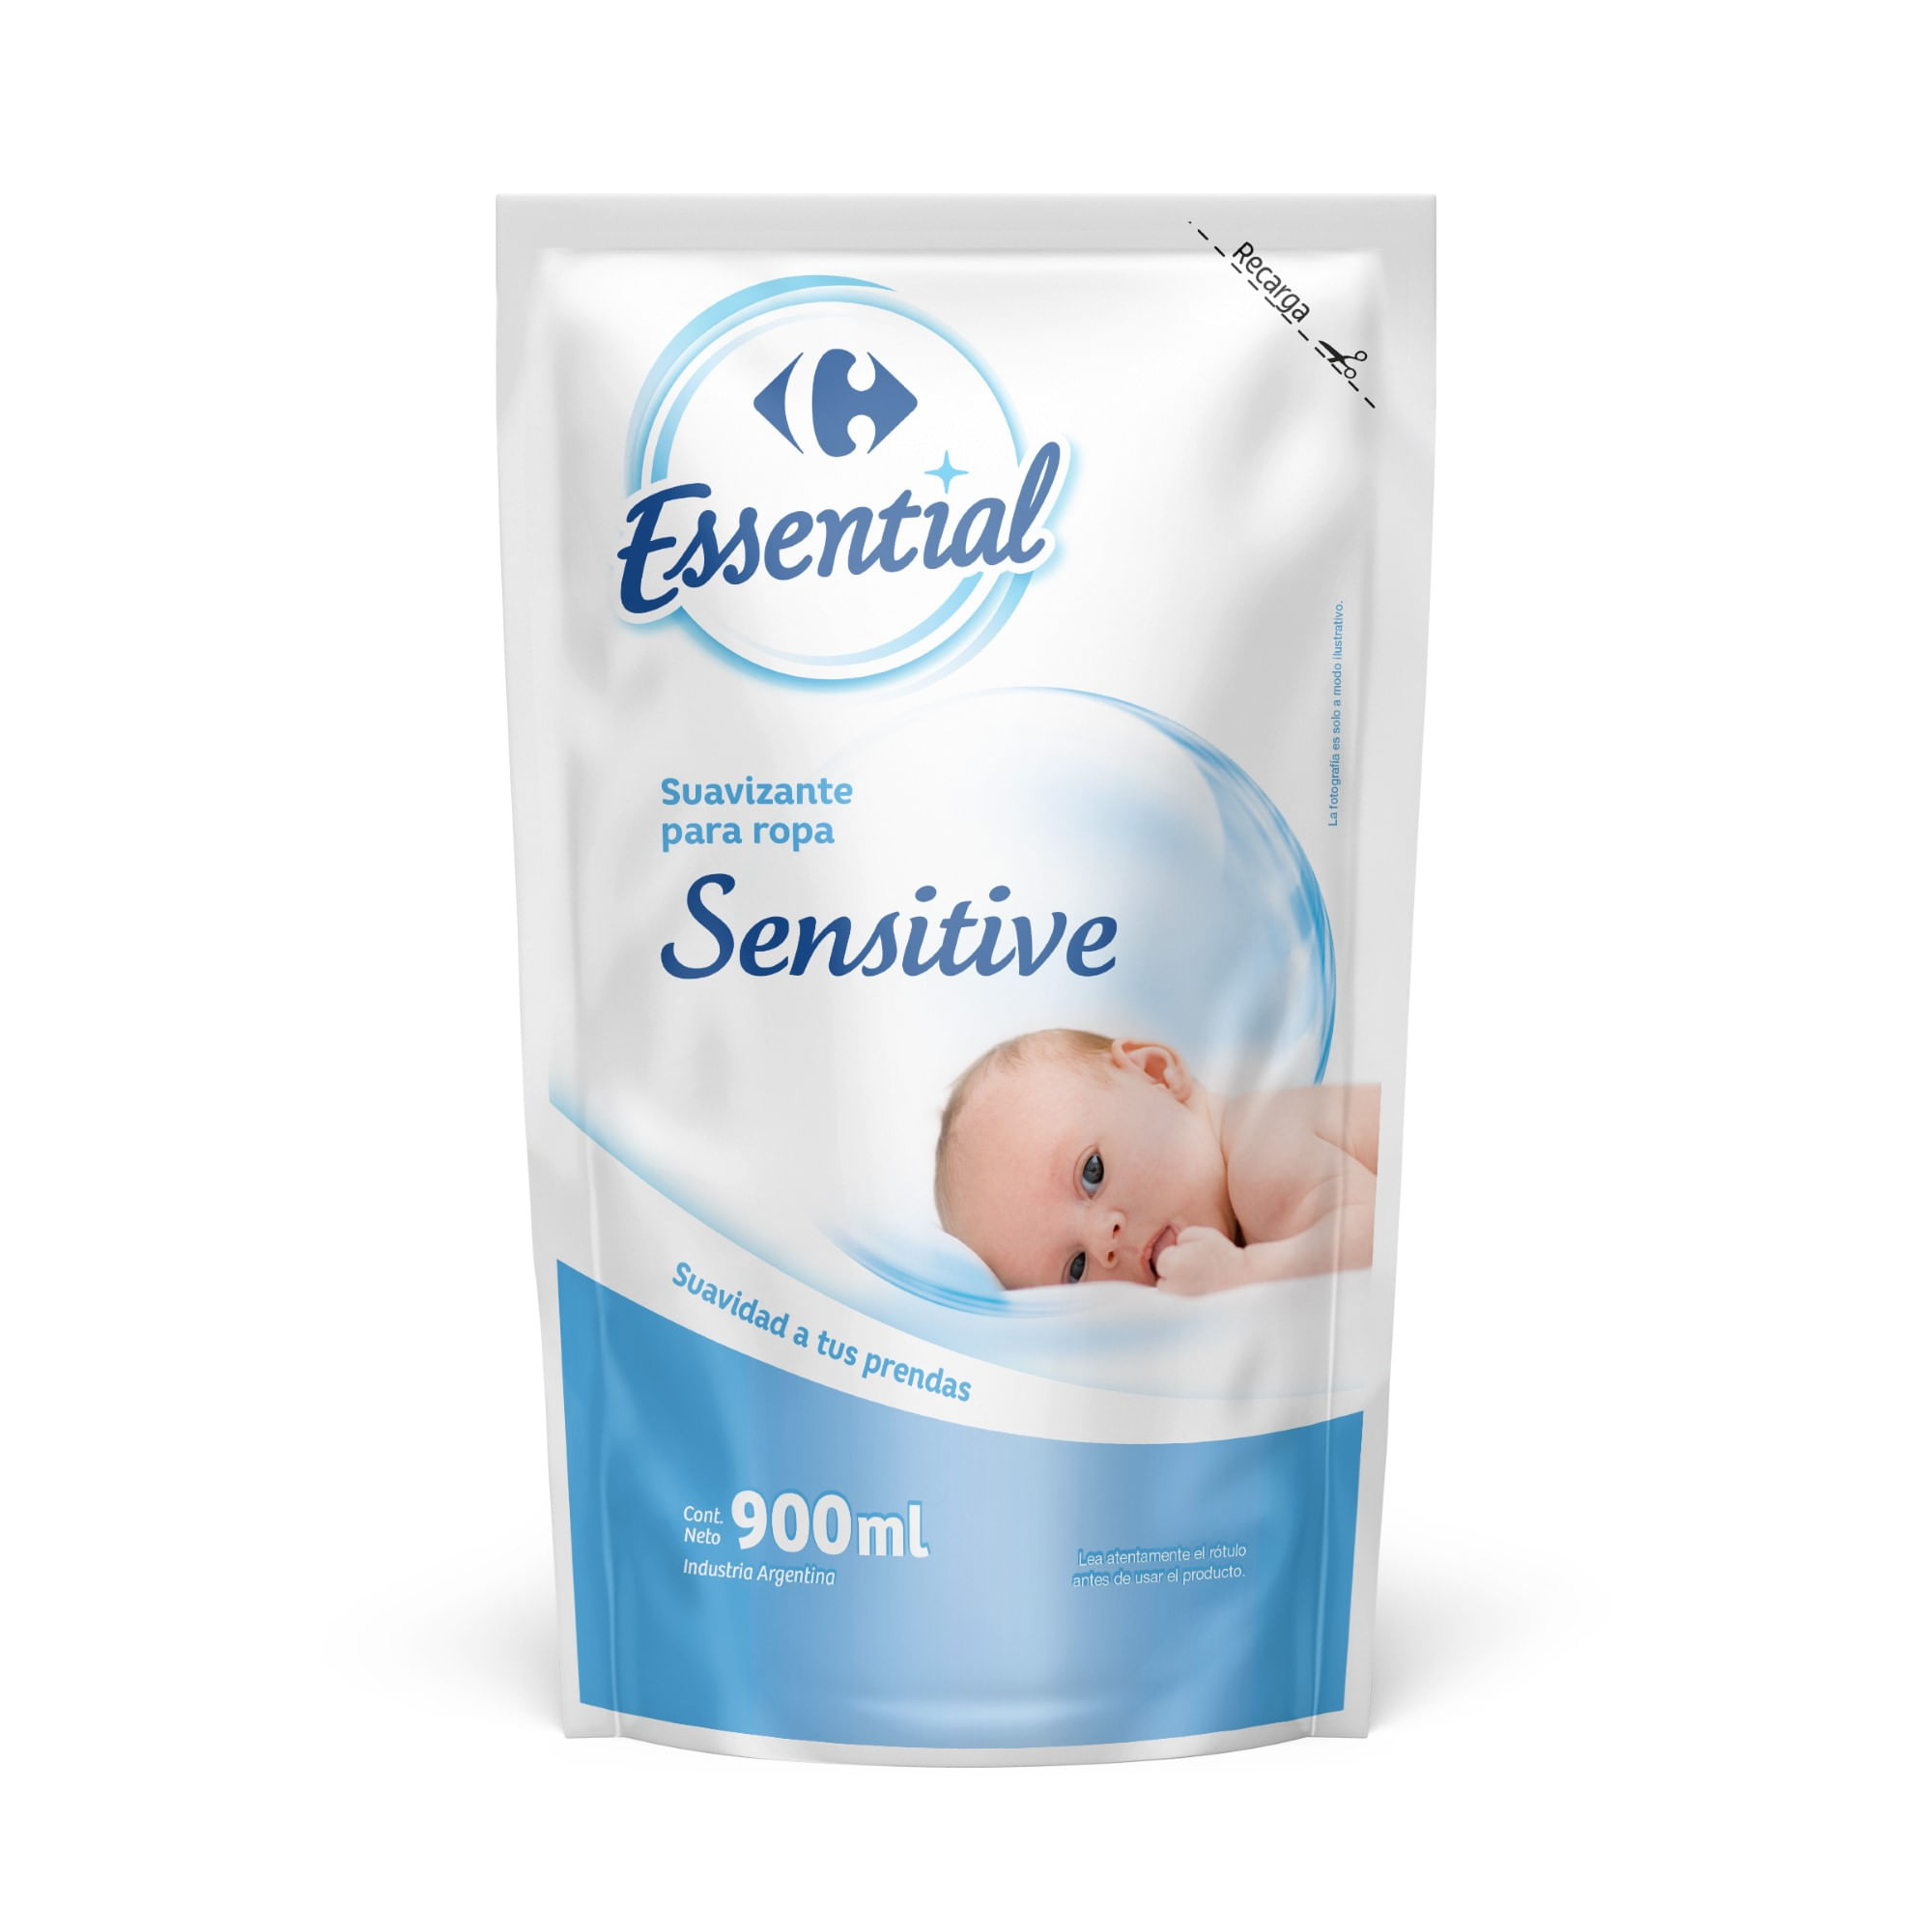 Carrefour España on X: Detergente y suavizante especial para bebés  Carrefour. Ropita tan limpia y suave como su propia piel #MarcaCarrefour   / X